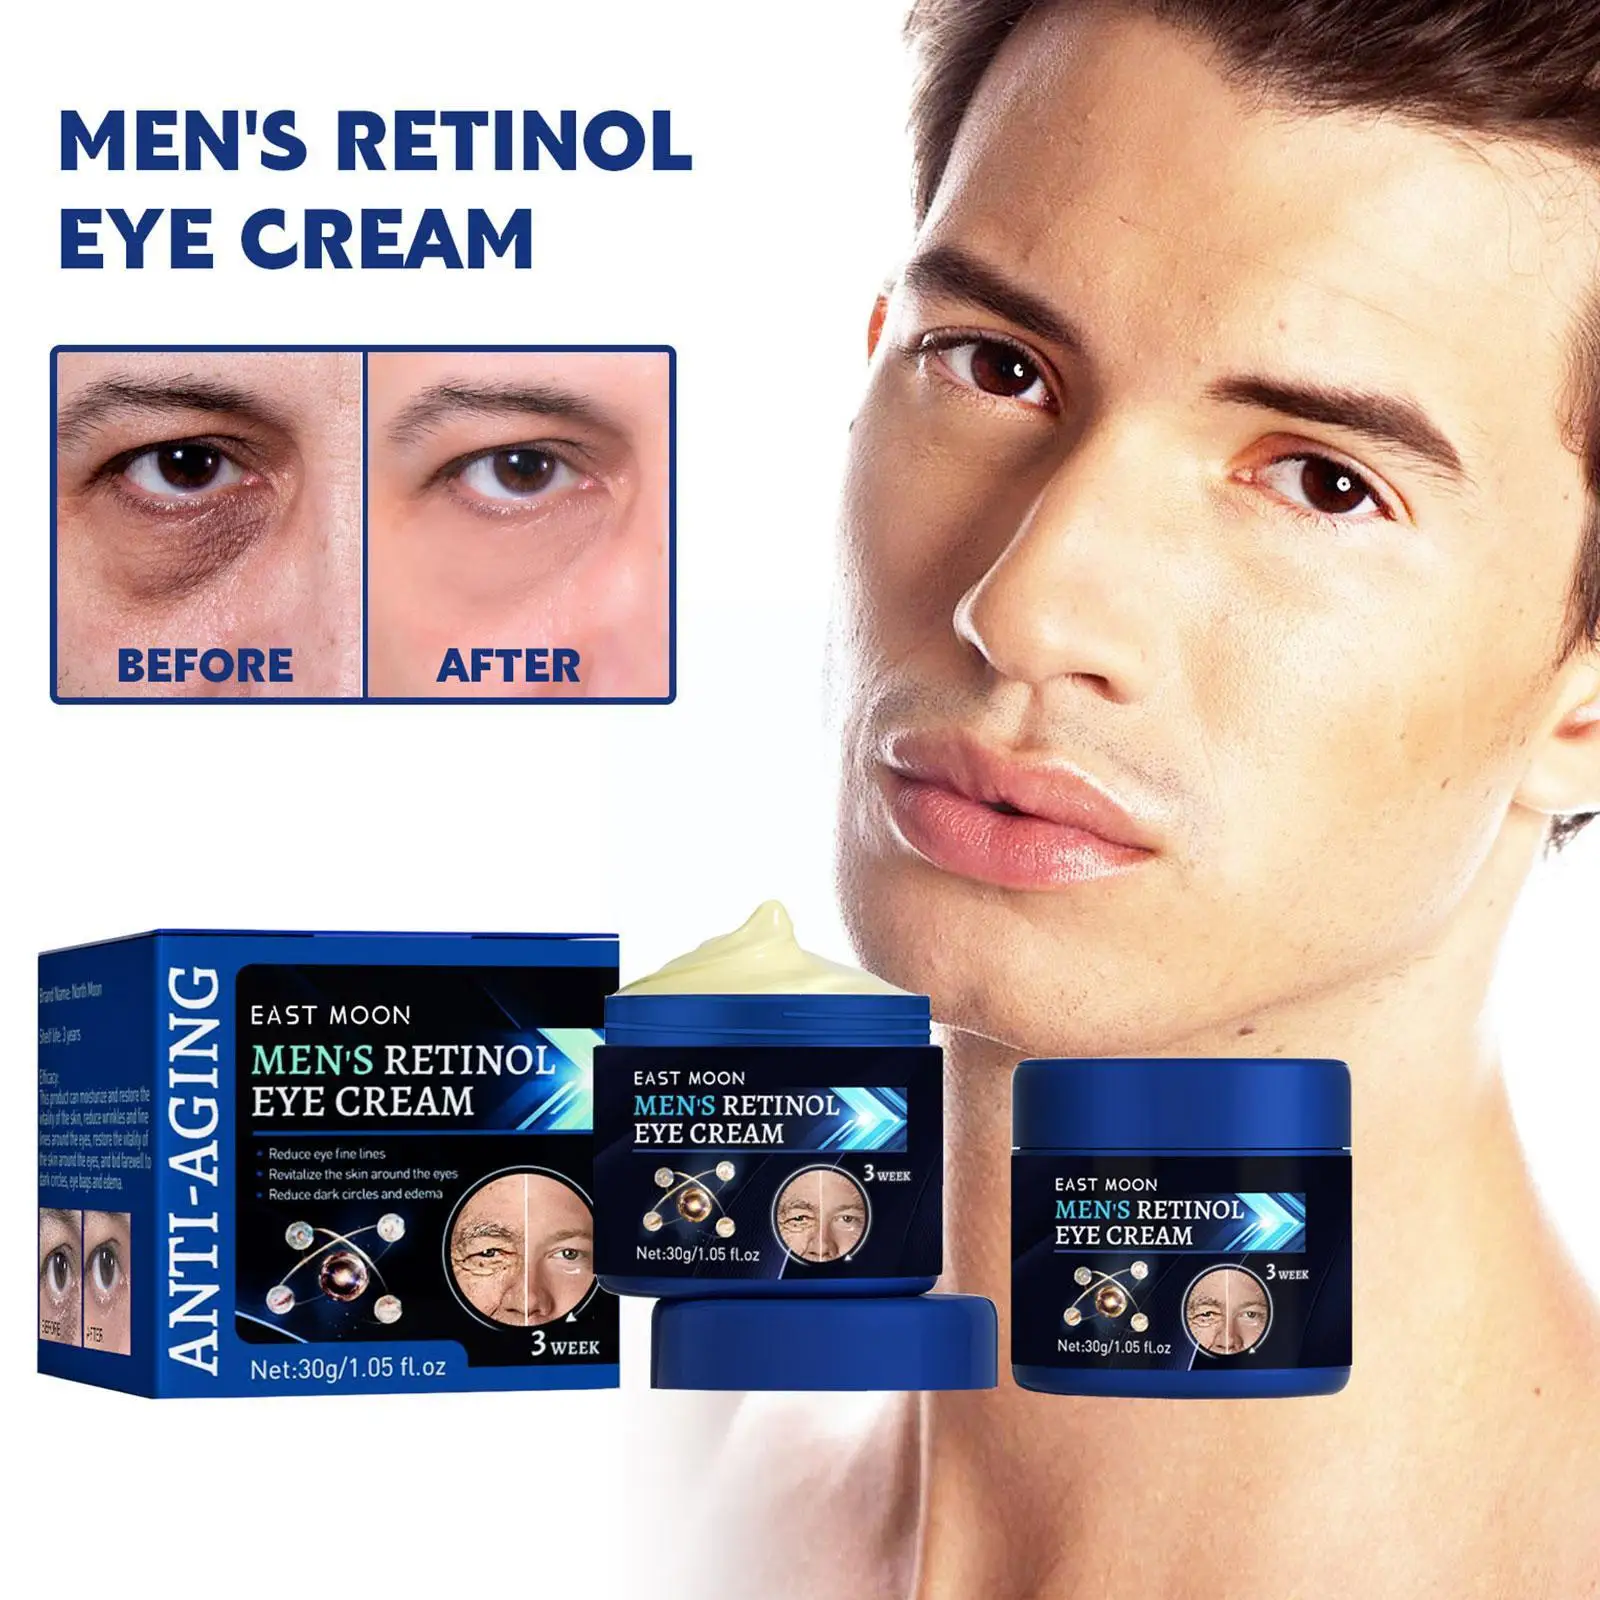 

Retinol Anti Wrinkle Face Cream For Men Collagen Anti Aging Firming Lifting Hyaluronic Acid Brightening Moisturizing Skin C G8J8